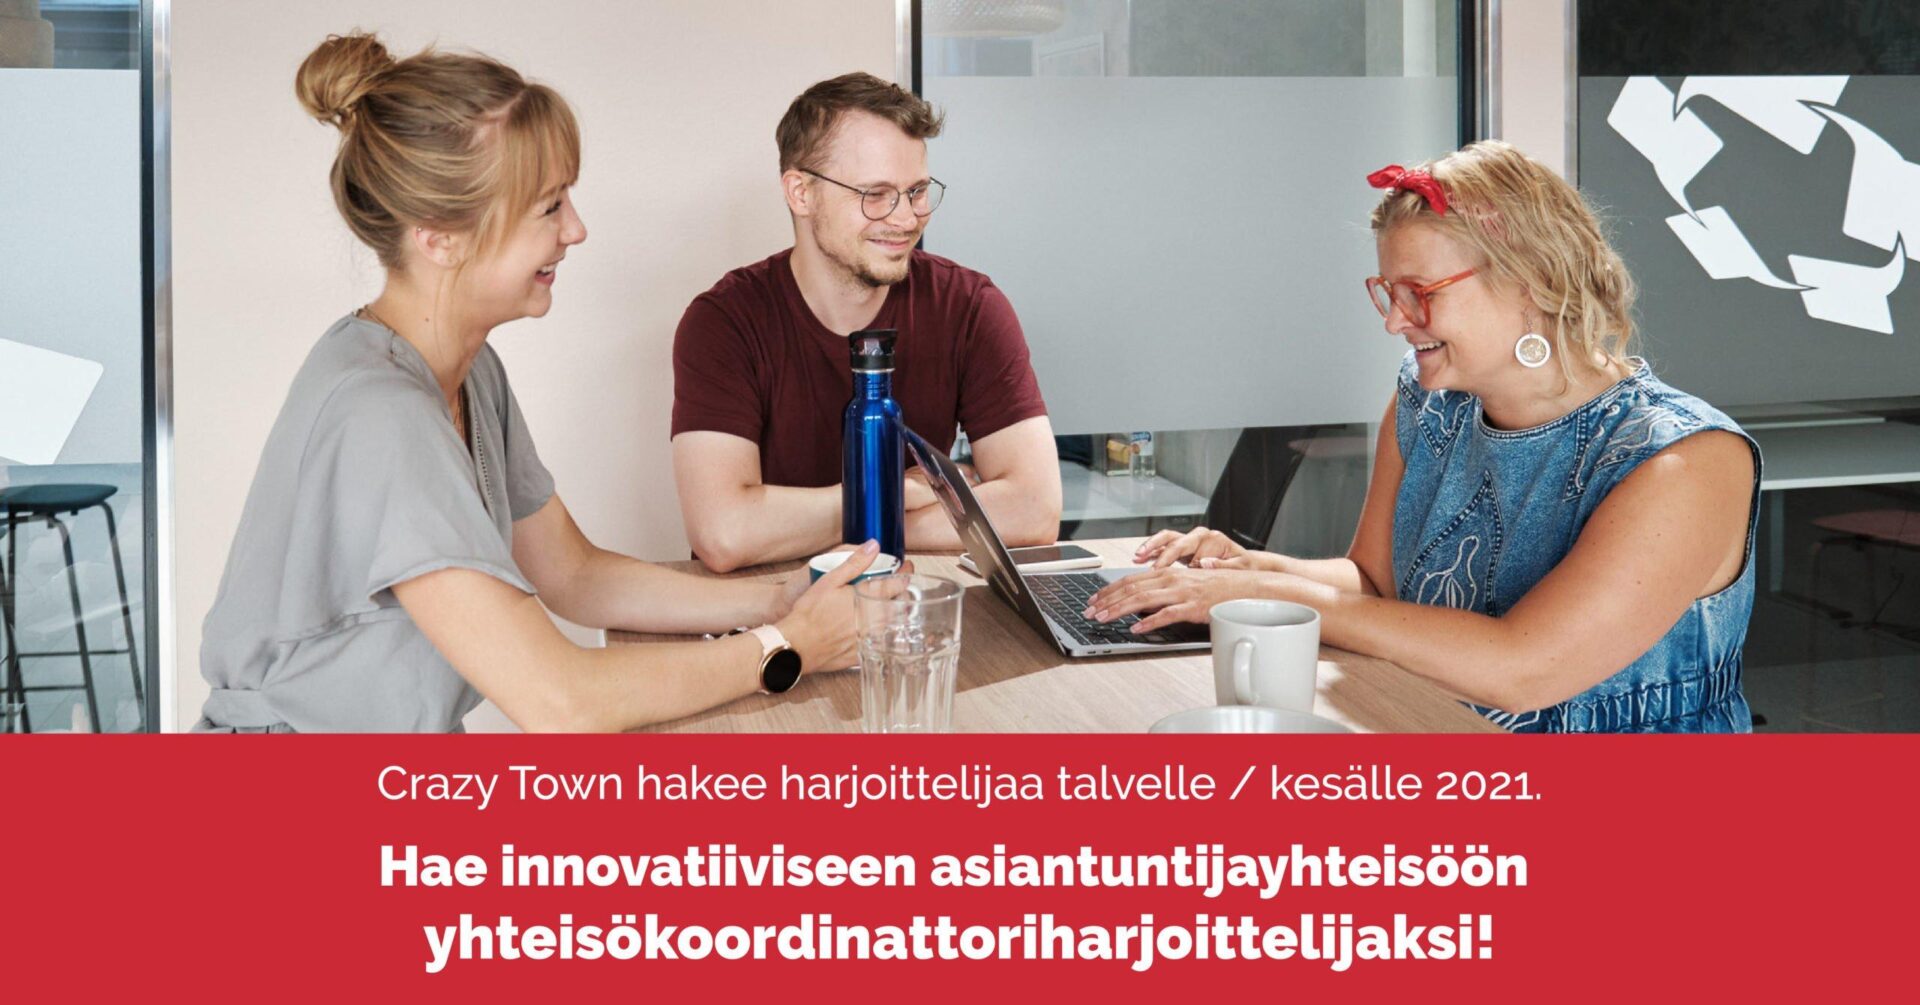 Haemme yhteisökoordinattoriharjoittelijaa Tampereelle